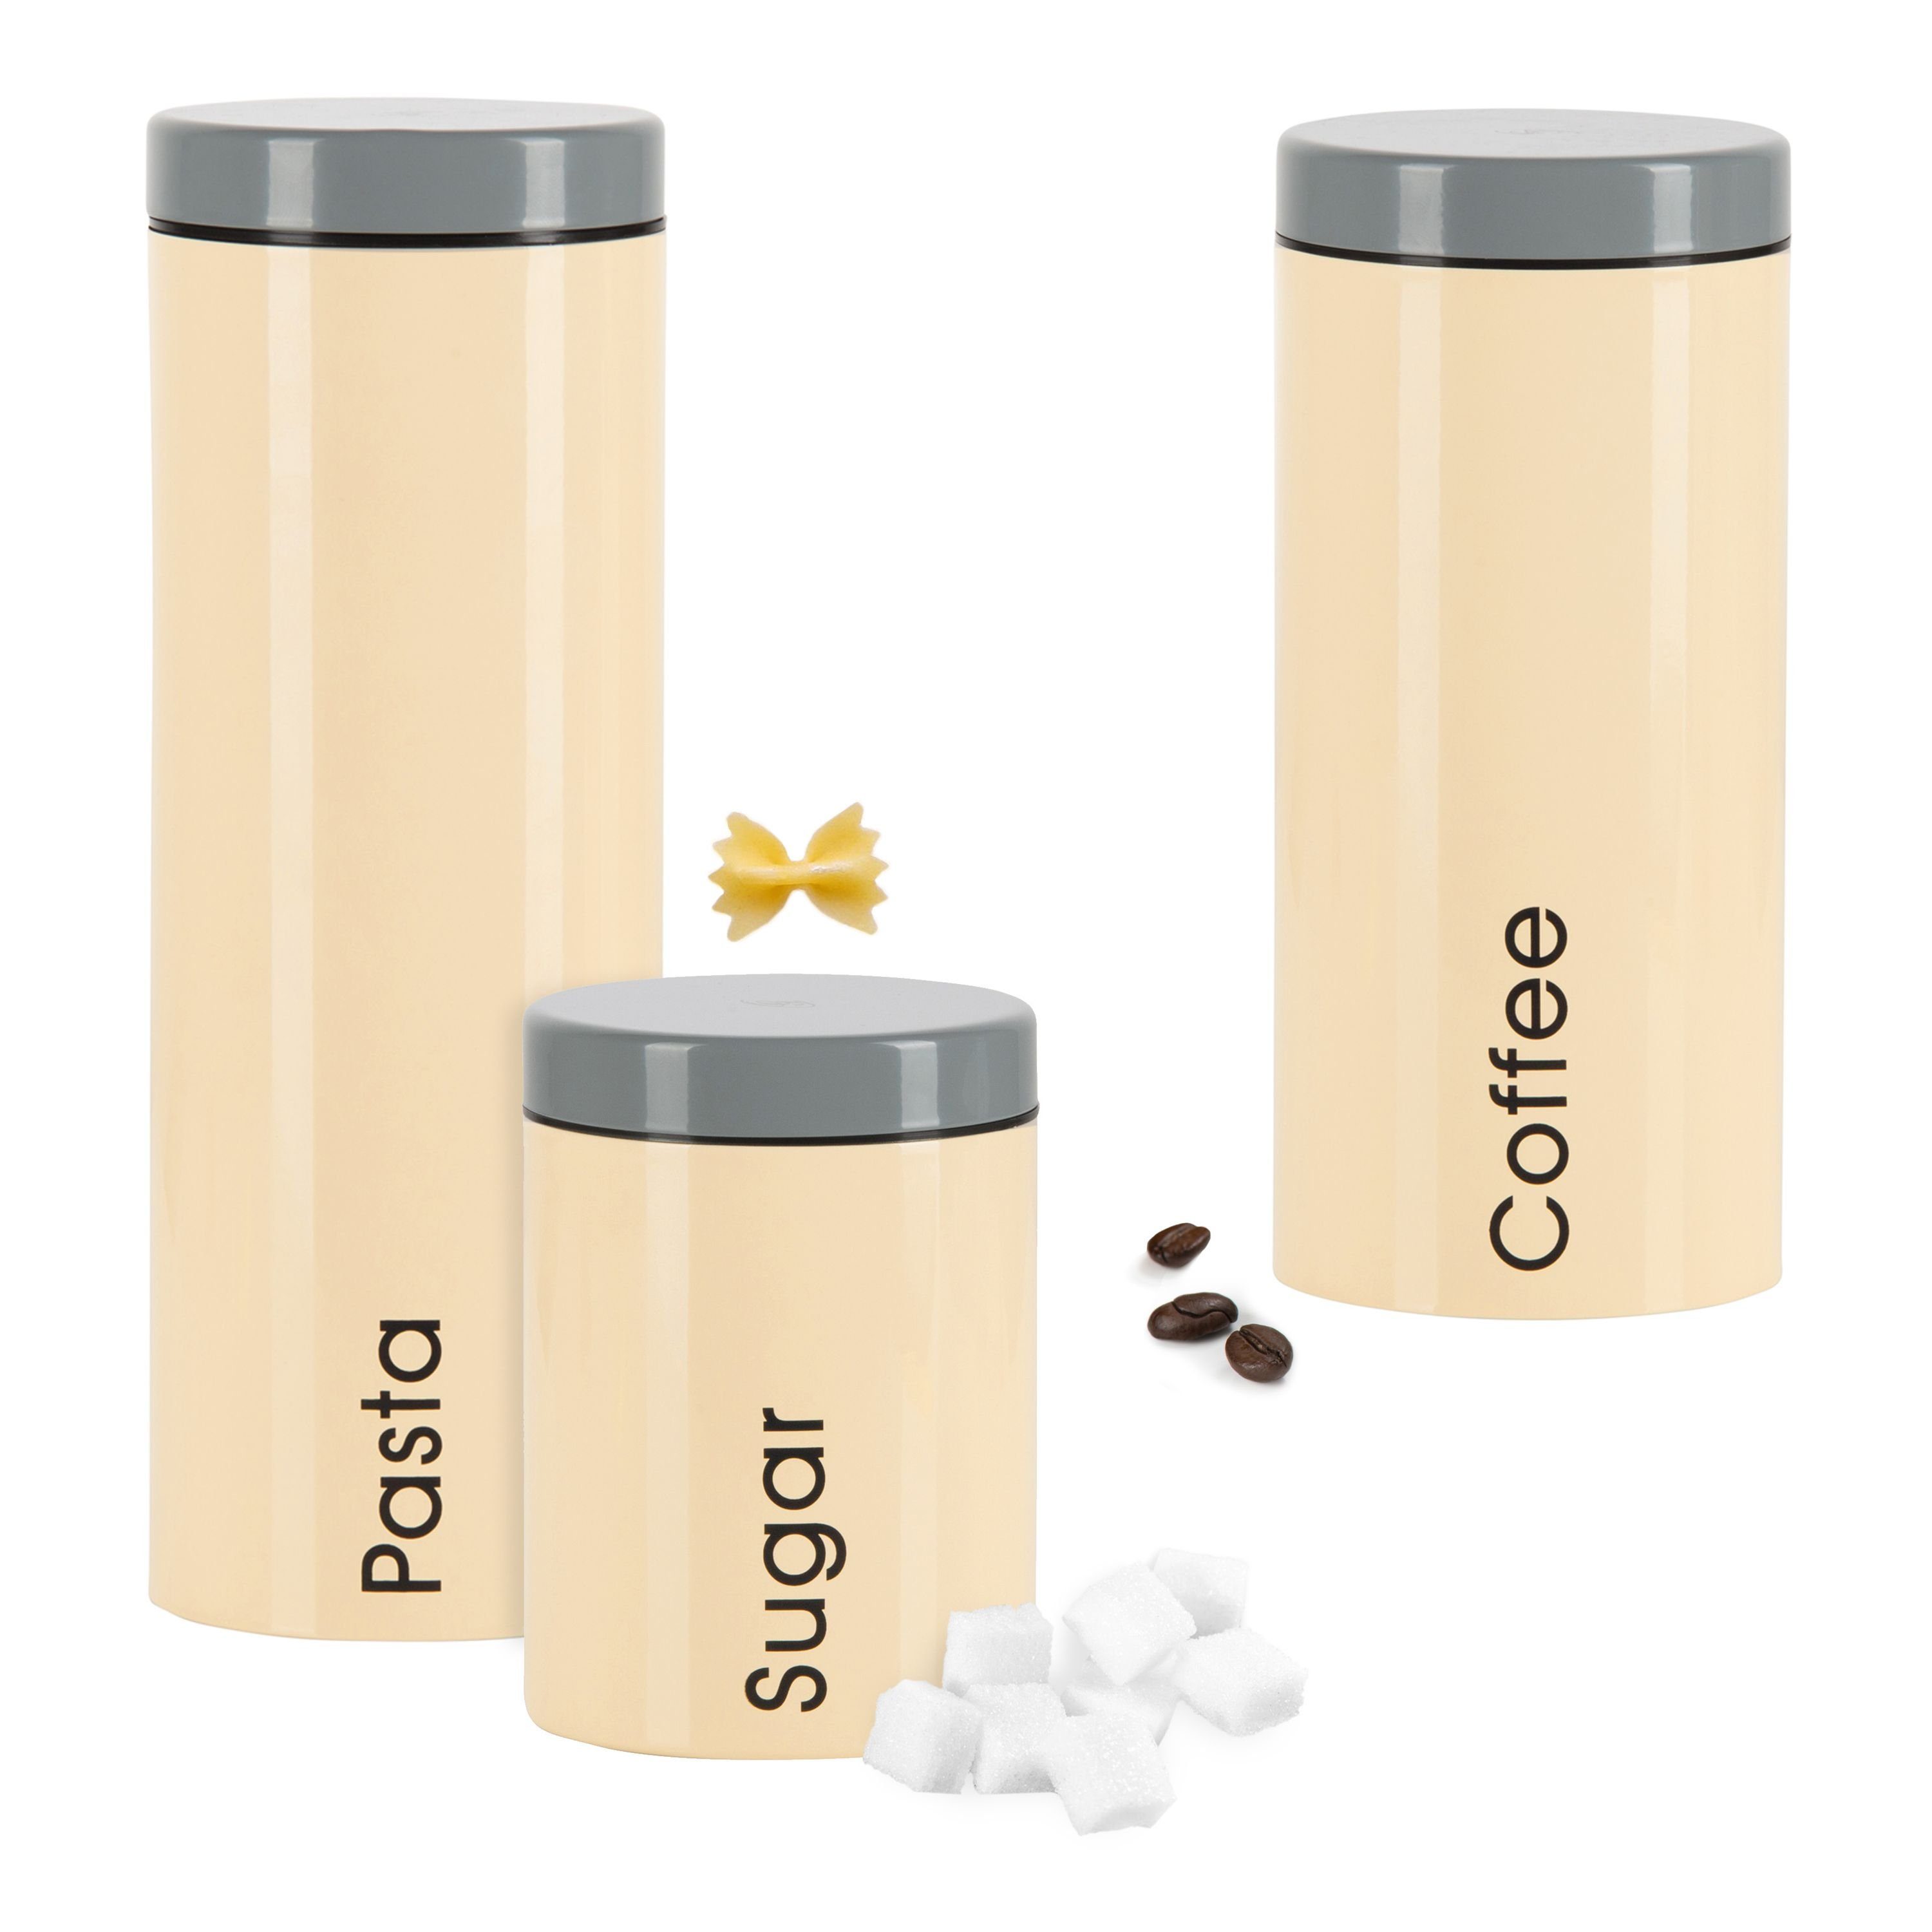 Genius Vorratsglas 3er-Set Vorratsdosen Genius: Pasta + Coffee + Sugar, Metall Beige